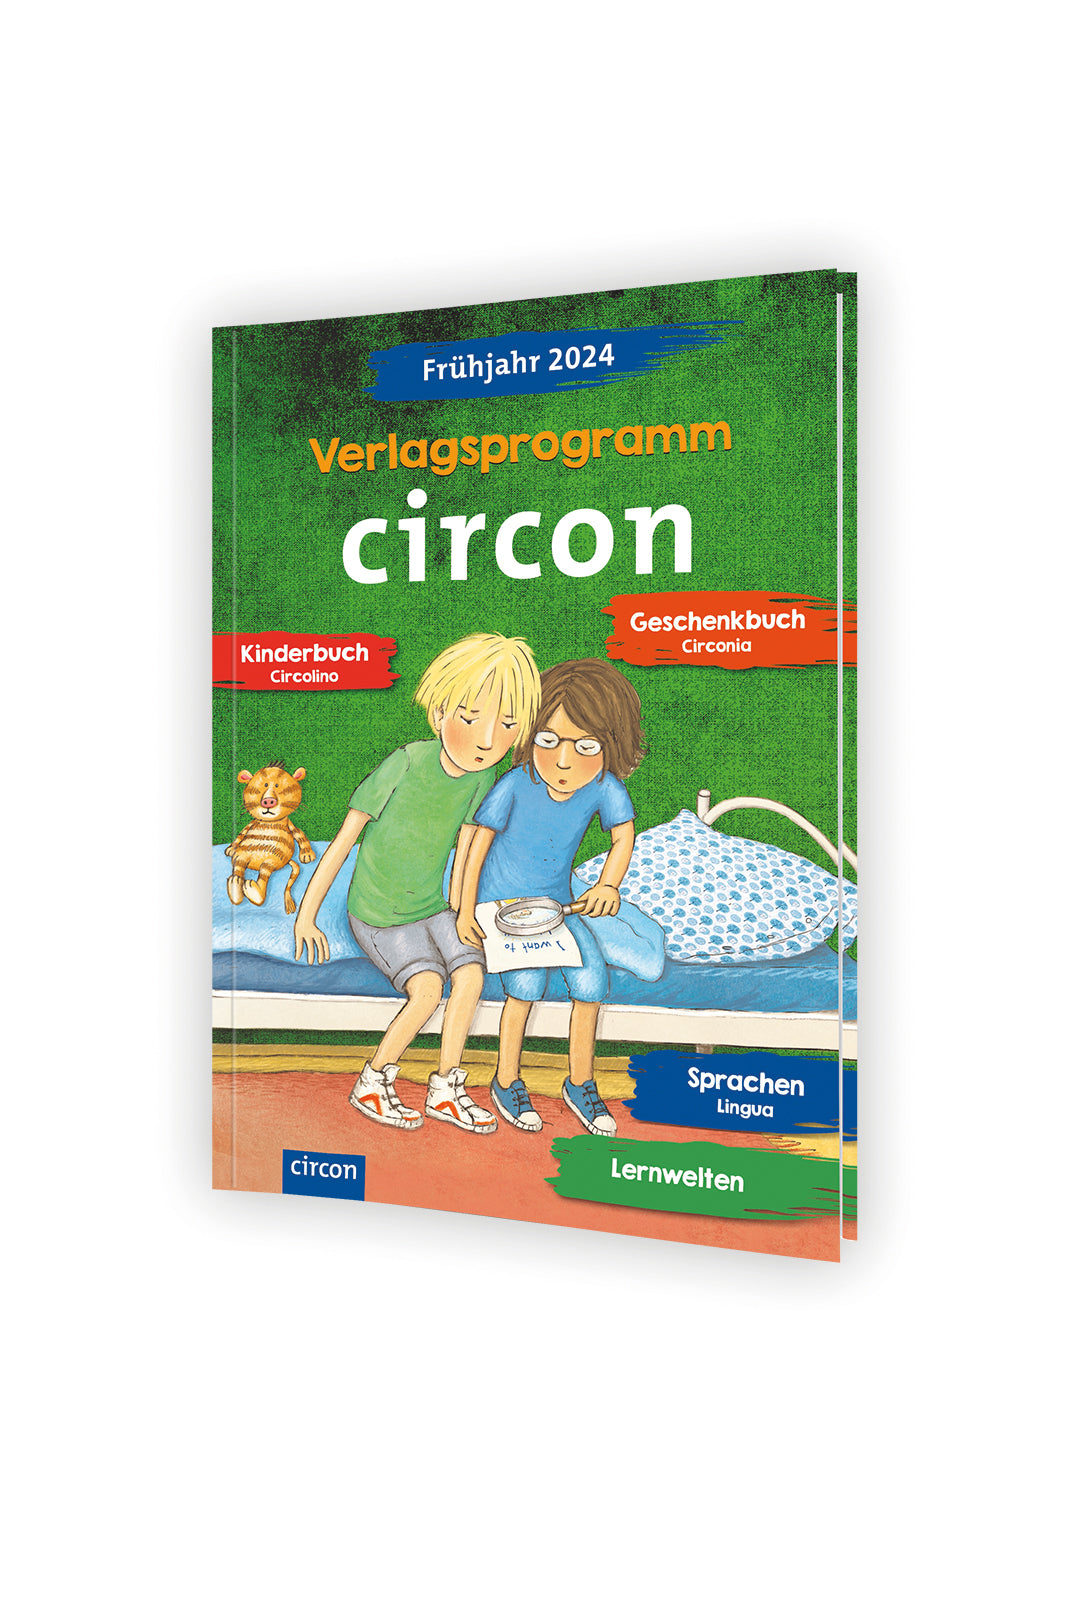 Das Bild zeigt das Cover des Verlagsprogramms Frühjahr 2024 des Circon Verlags in 3D.